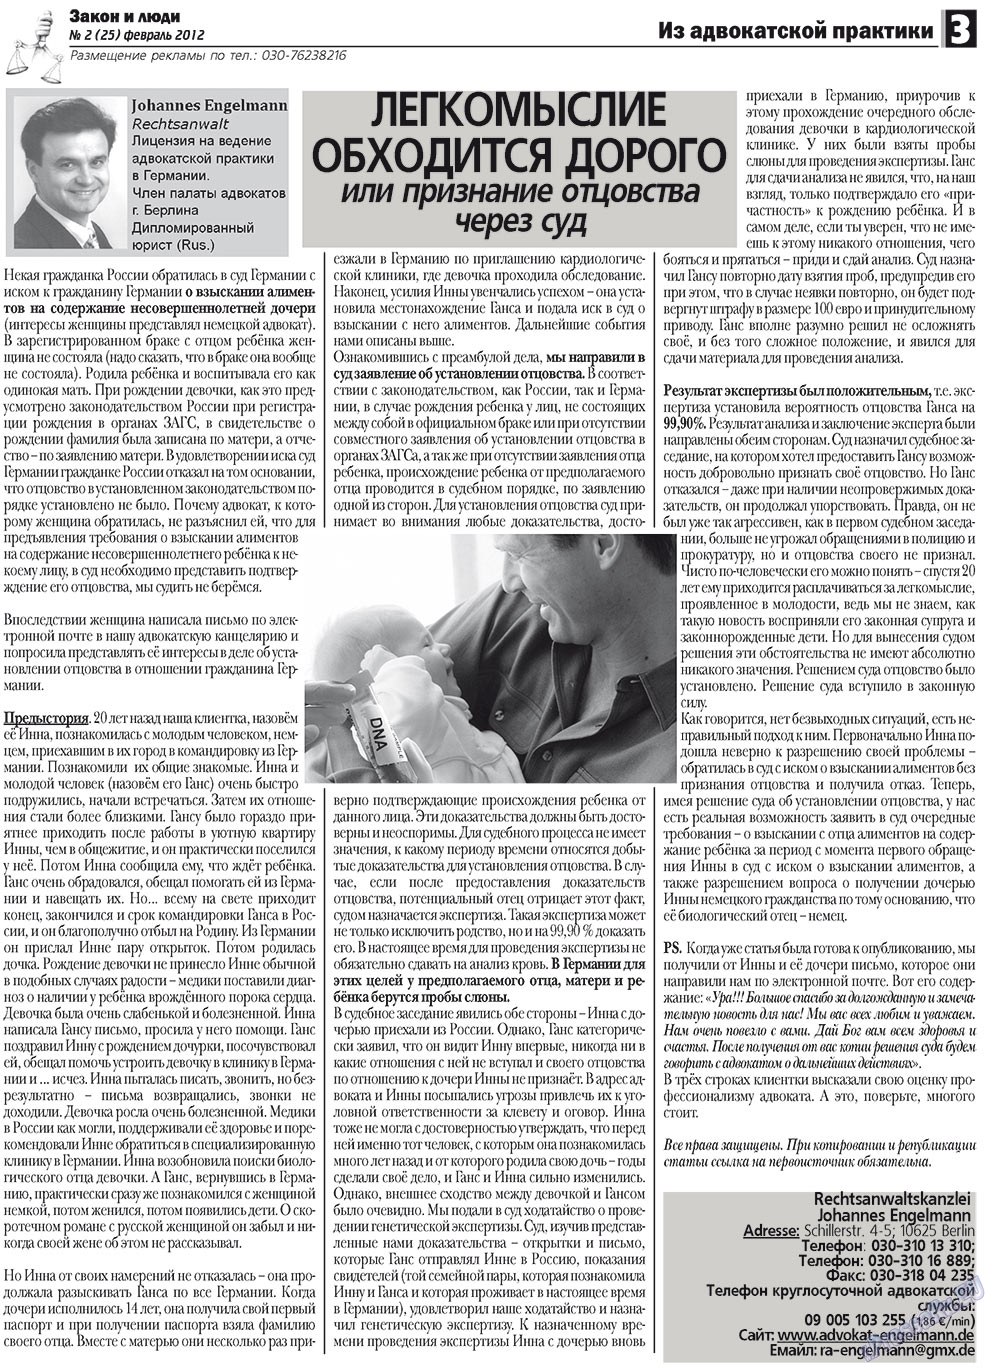 Закон и люди, газета. 2012 №2 стр.3